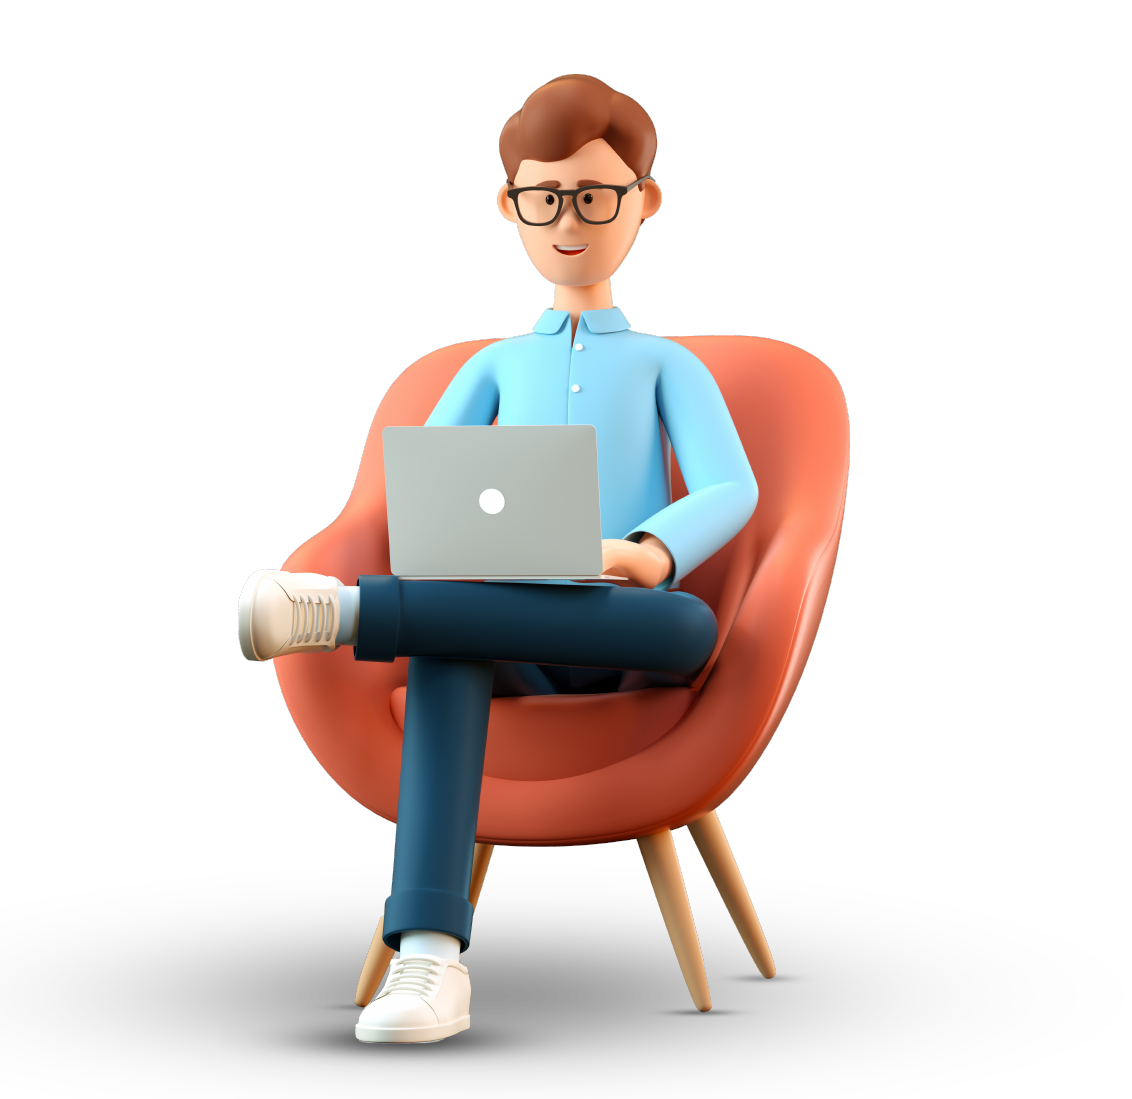 Ilustración en 3D de un hombre feliz sonriente con un portátil sentado en un sillón. Empresario de caricaturas trabajando en el cargo y usando las redes sociales, aislado de fondo blanco.